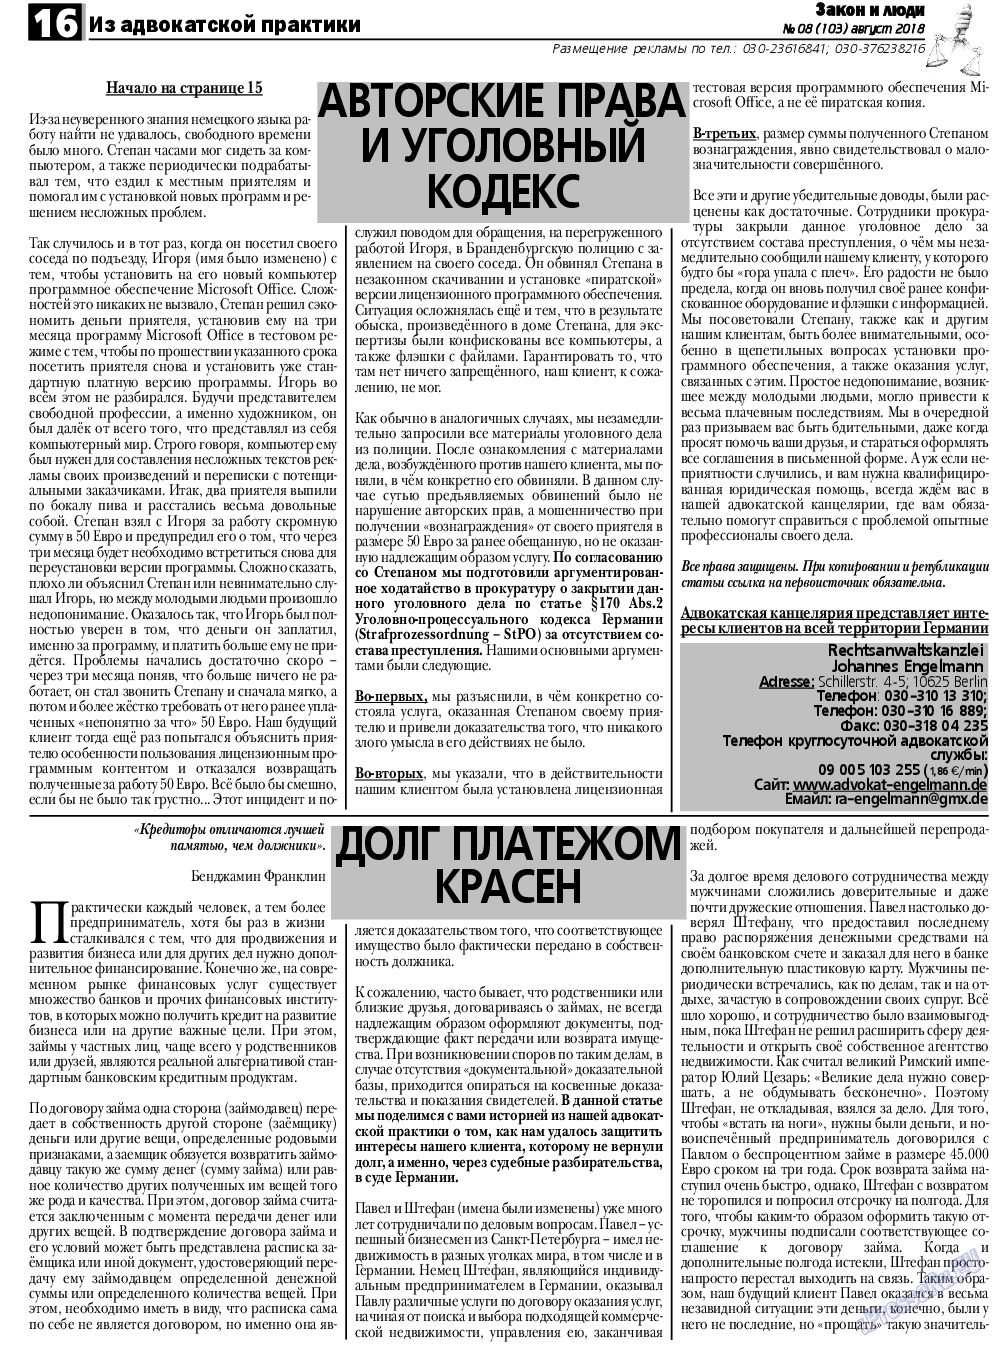 Закон и люди, газета. 2018 №8 стр.16